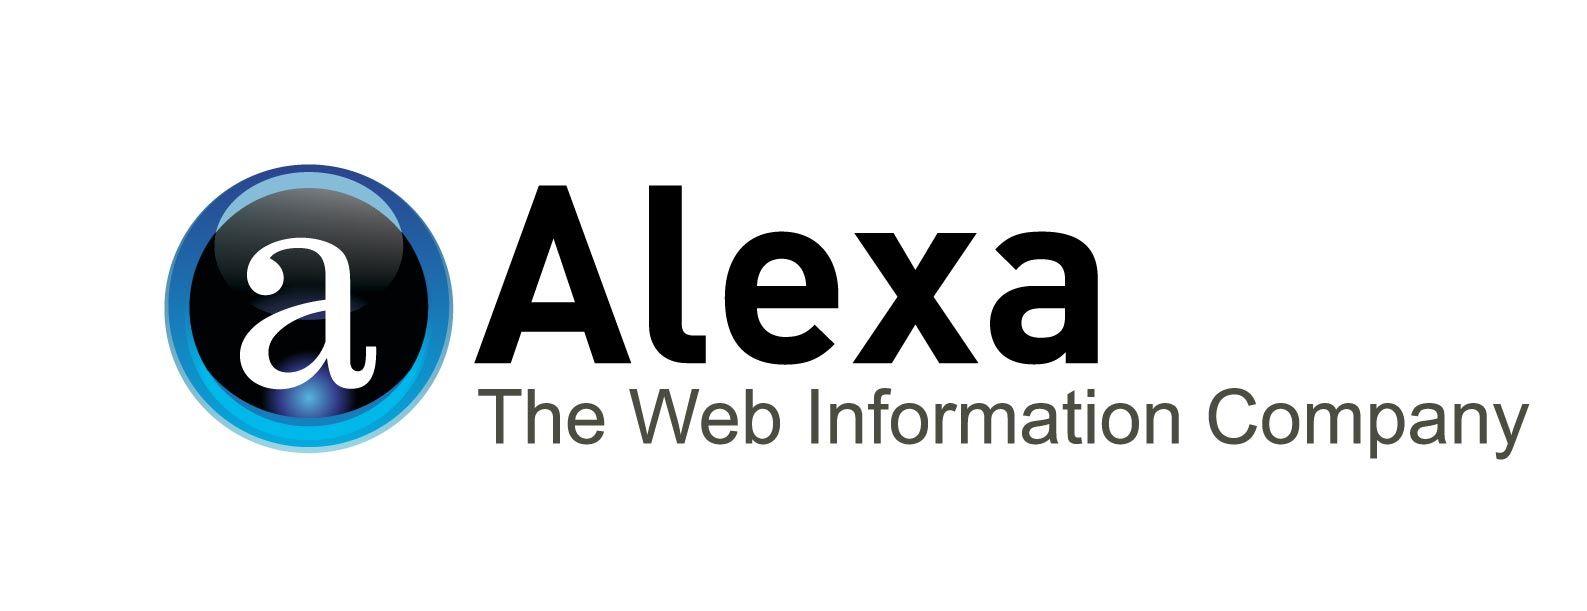 Alexa Logo - File:Alexa-logo.jpg - Wikimedia Commons